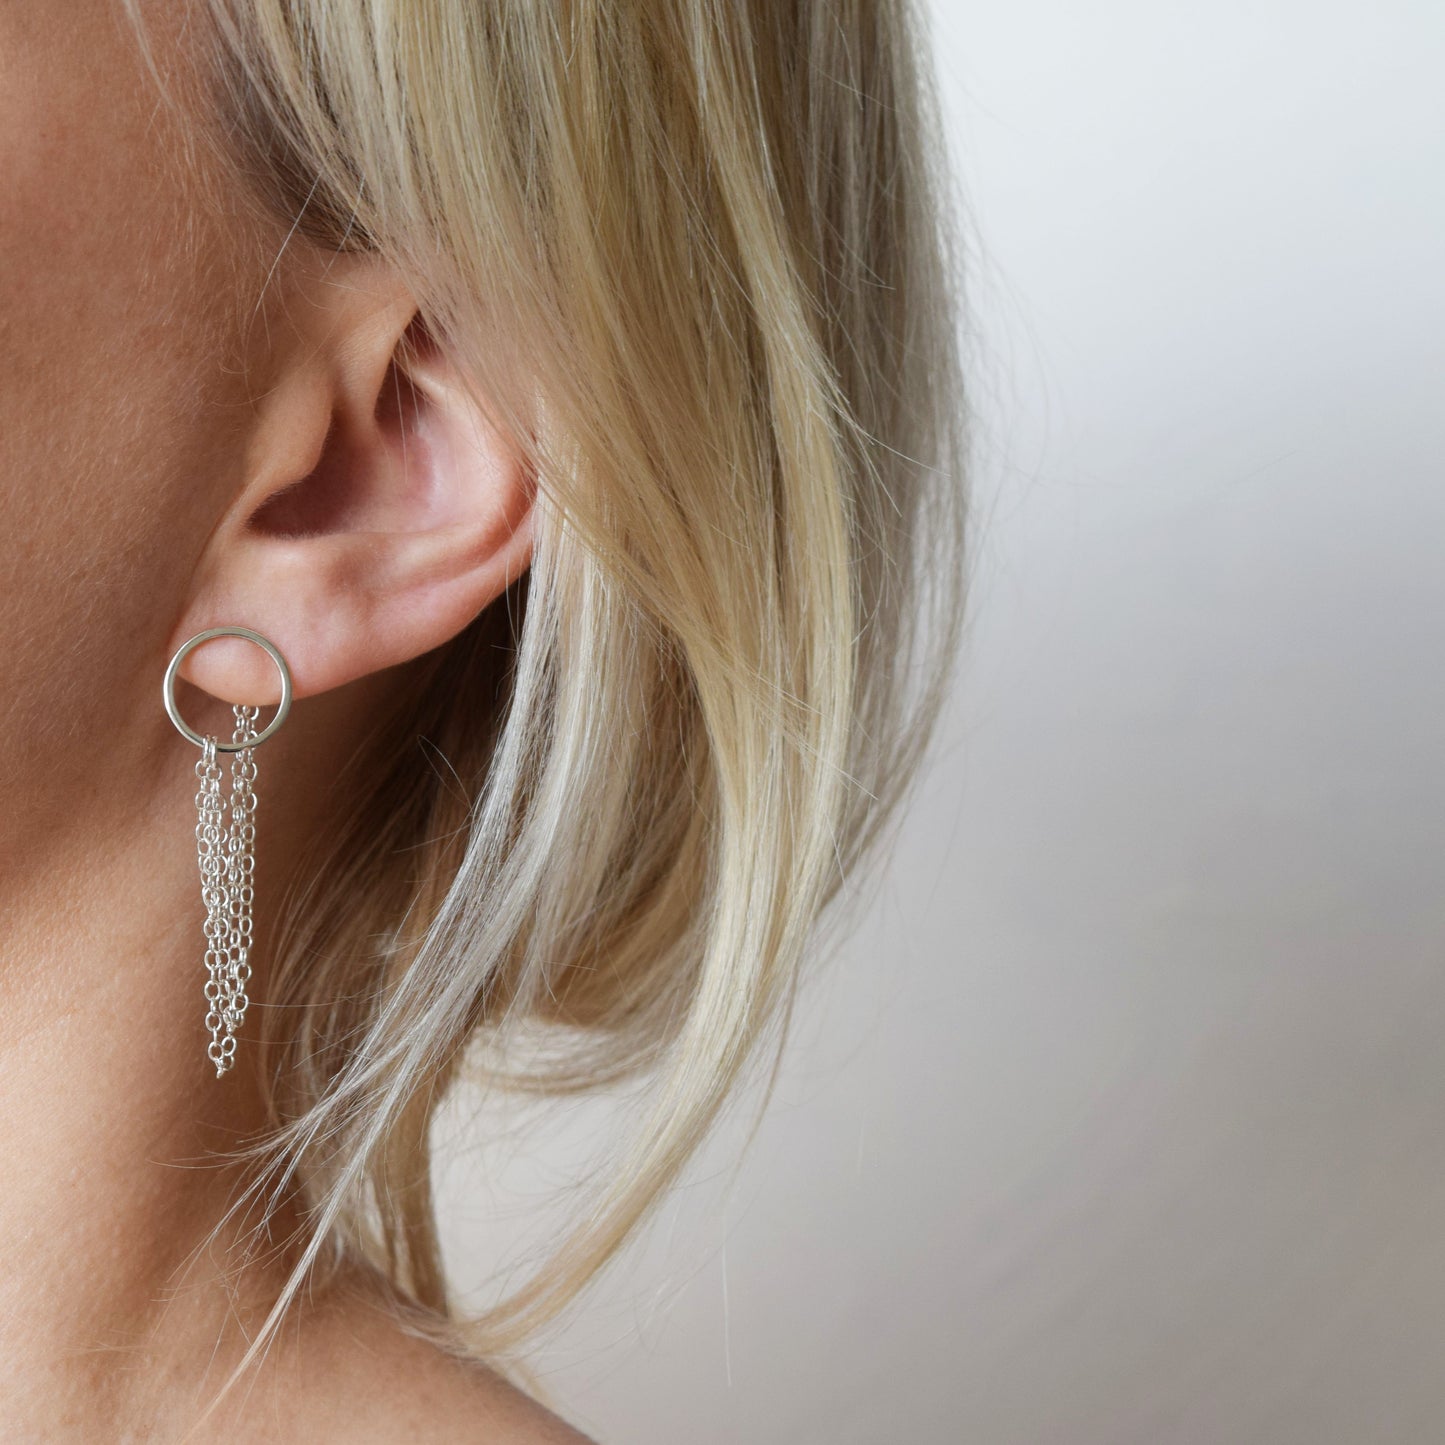 Blond model wearing silver Esme earrings